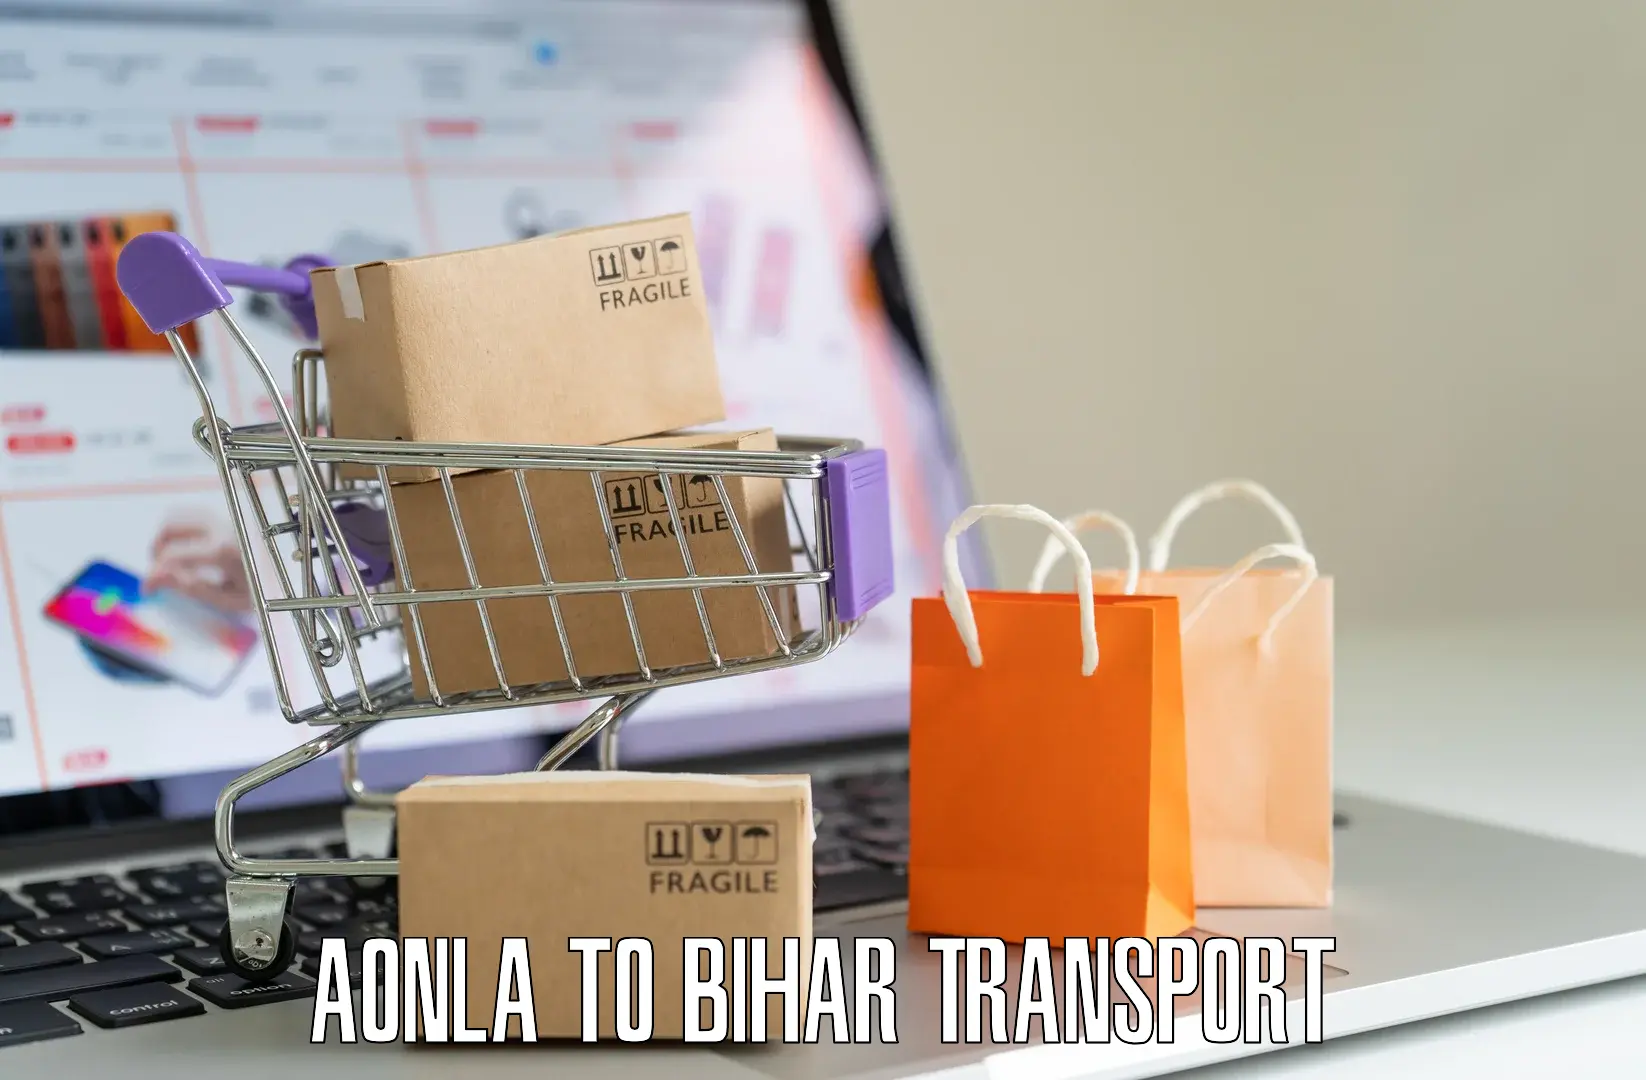 Sending bike to another city Aonla to Bharwara